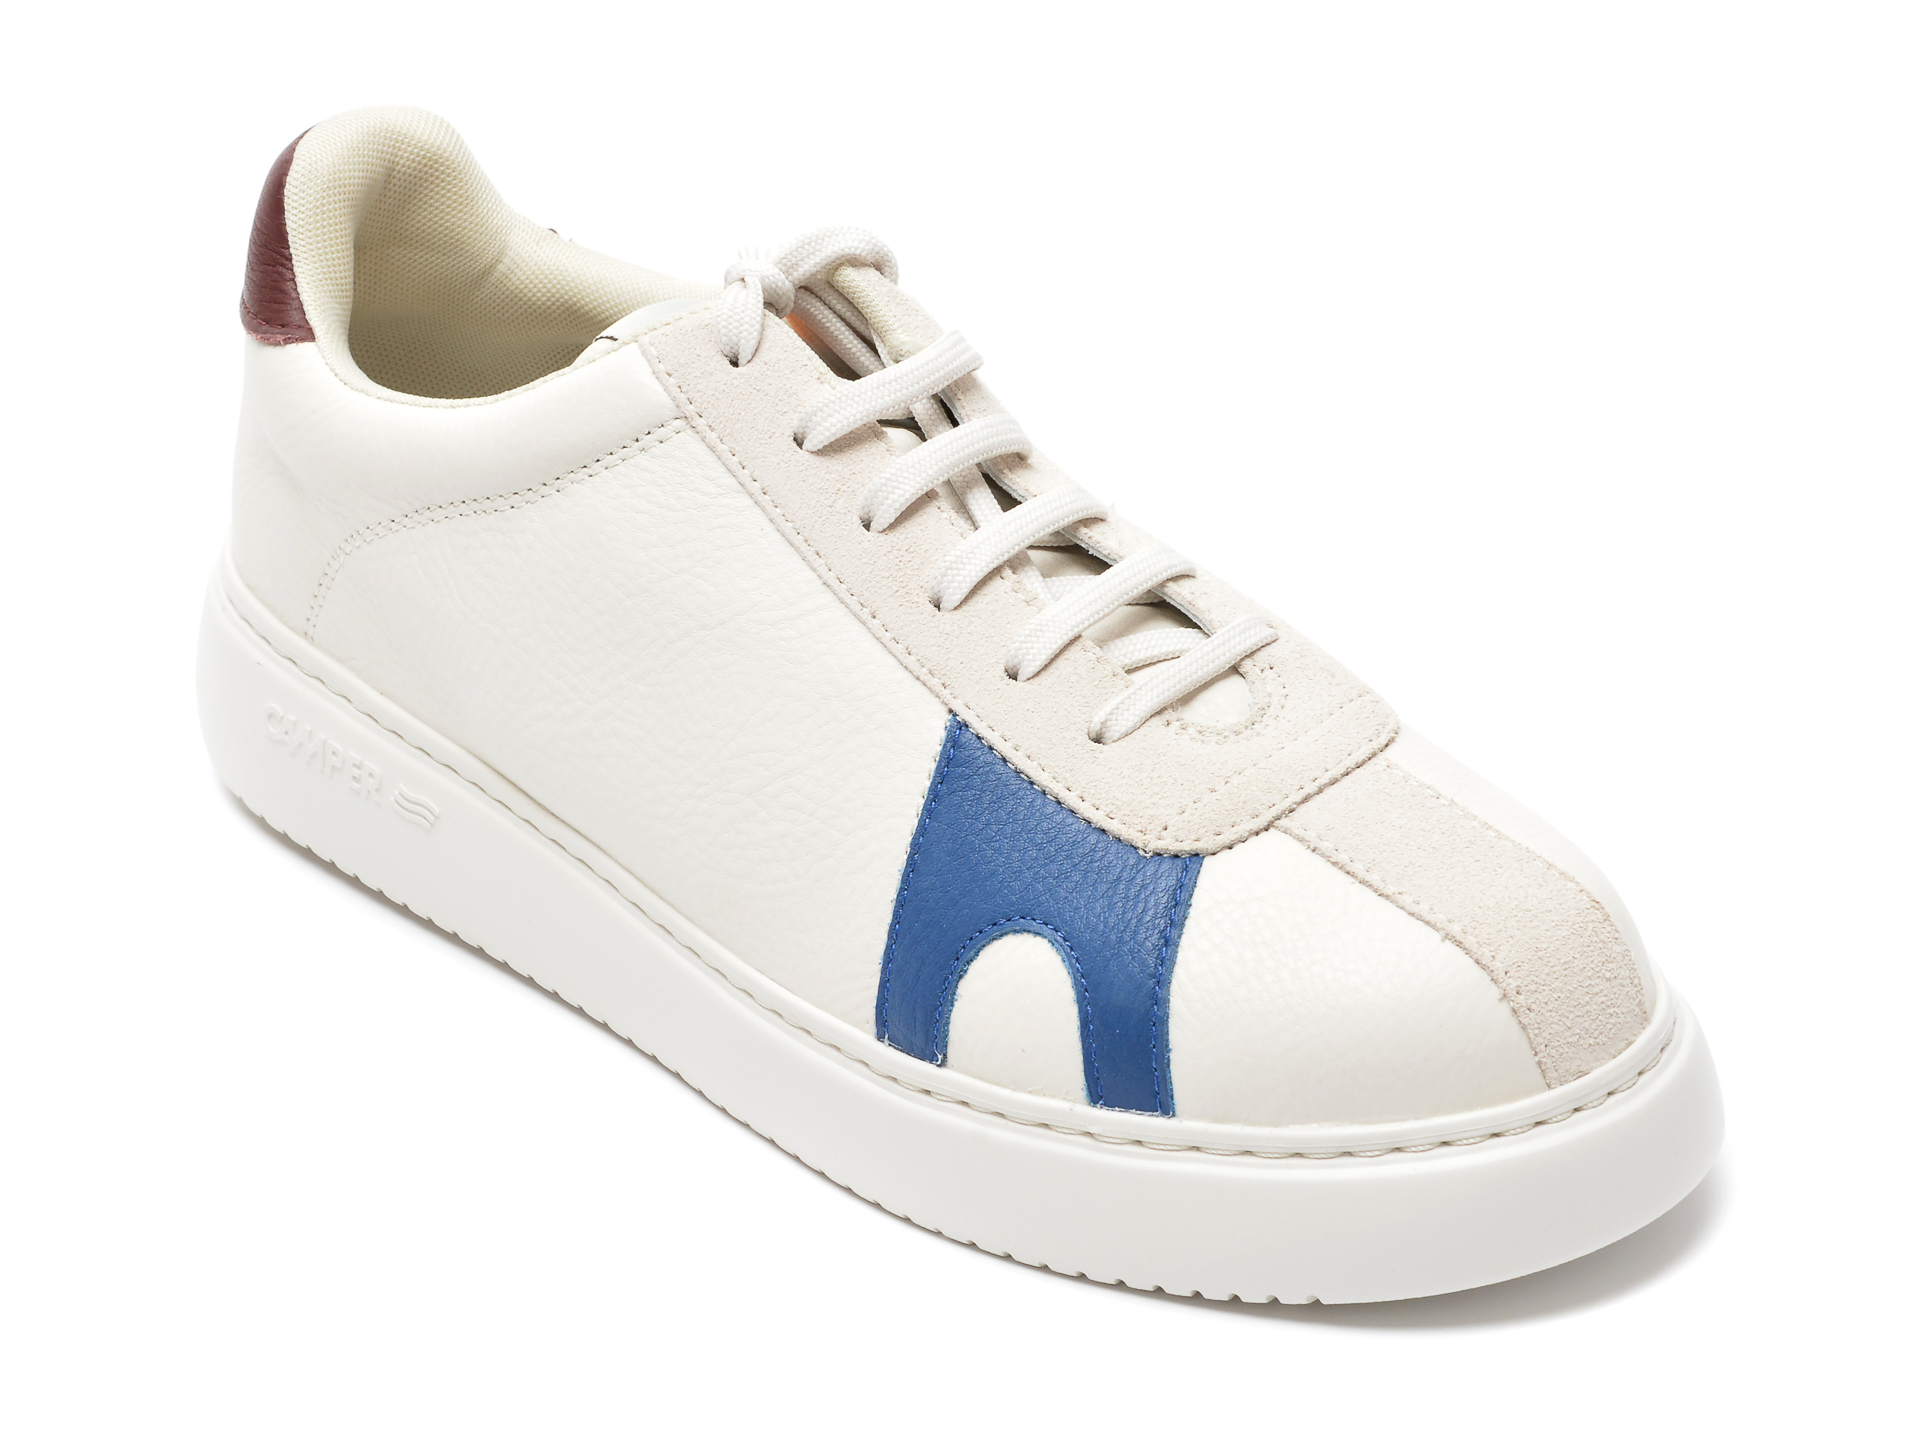 Pantofi CAMPER albi, K100743, din piele naturala